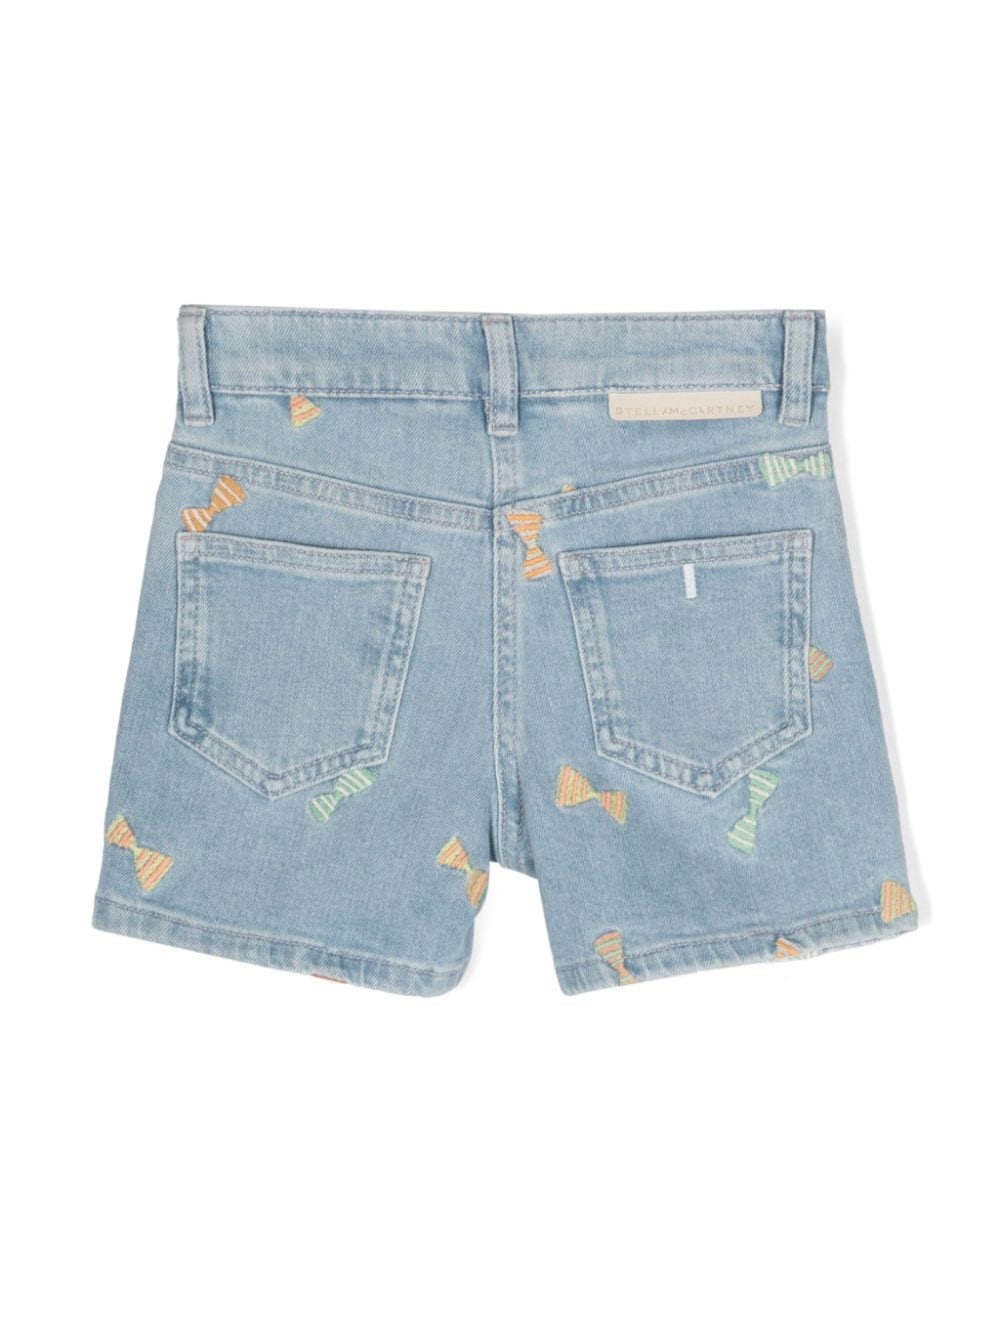 Light blue denim Bermuda shorts for girls